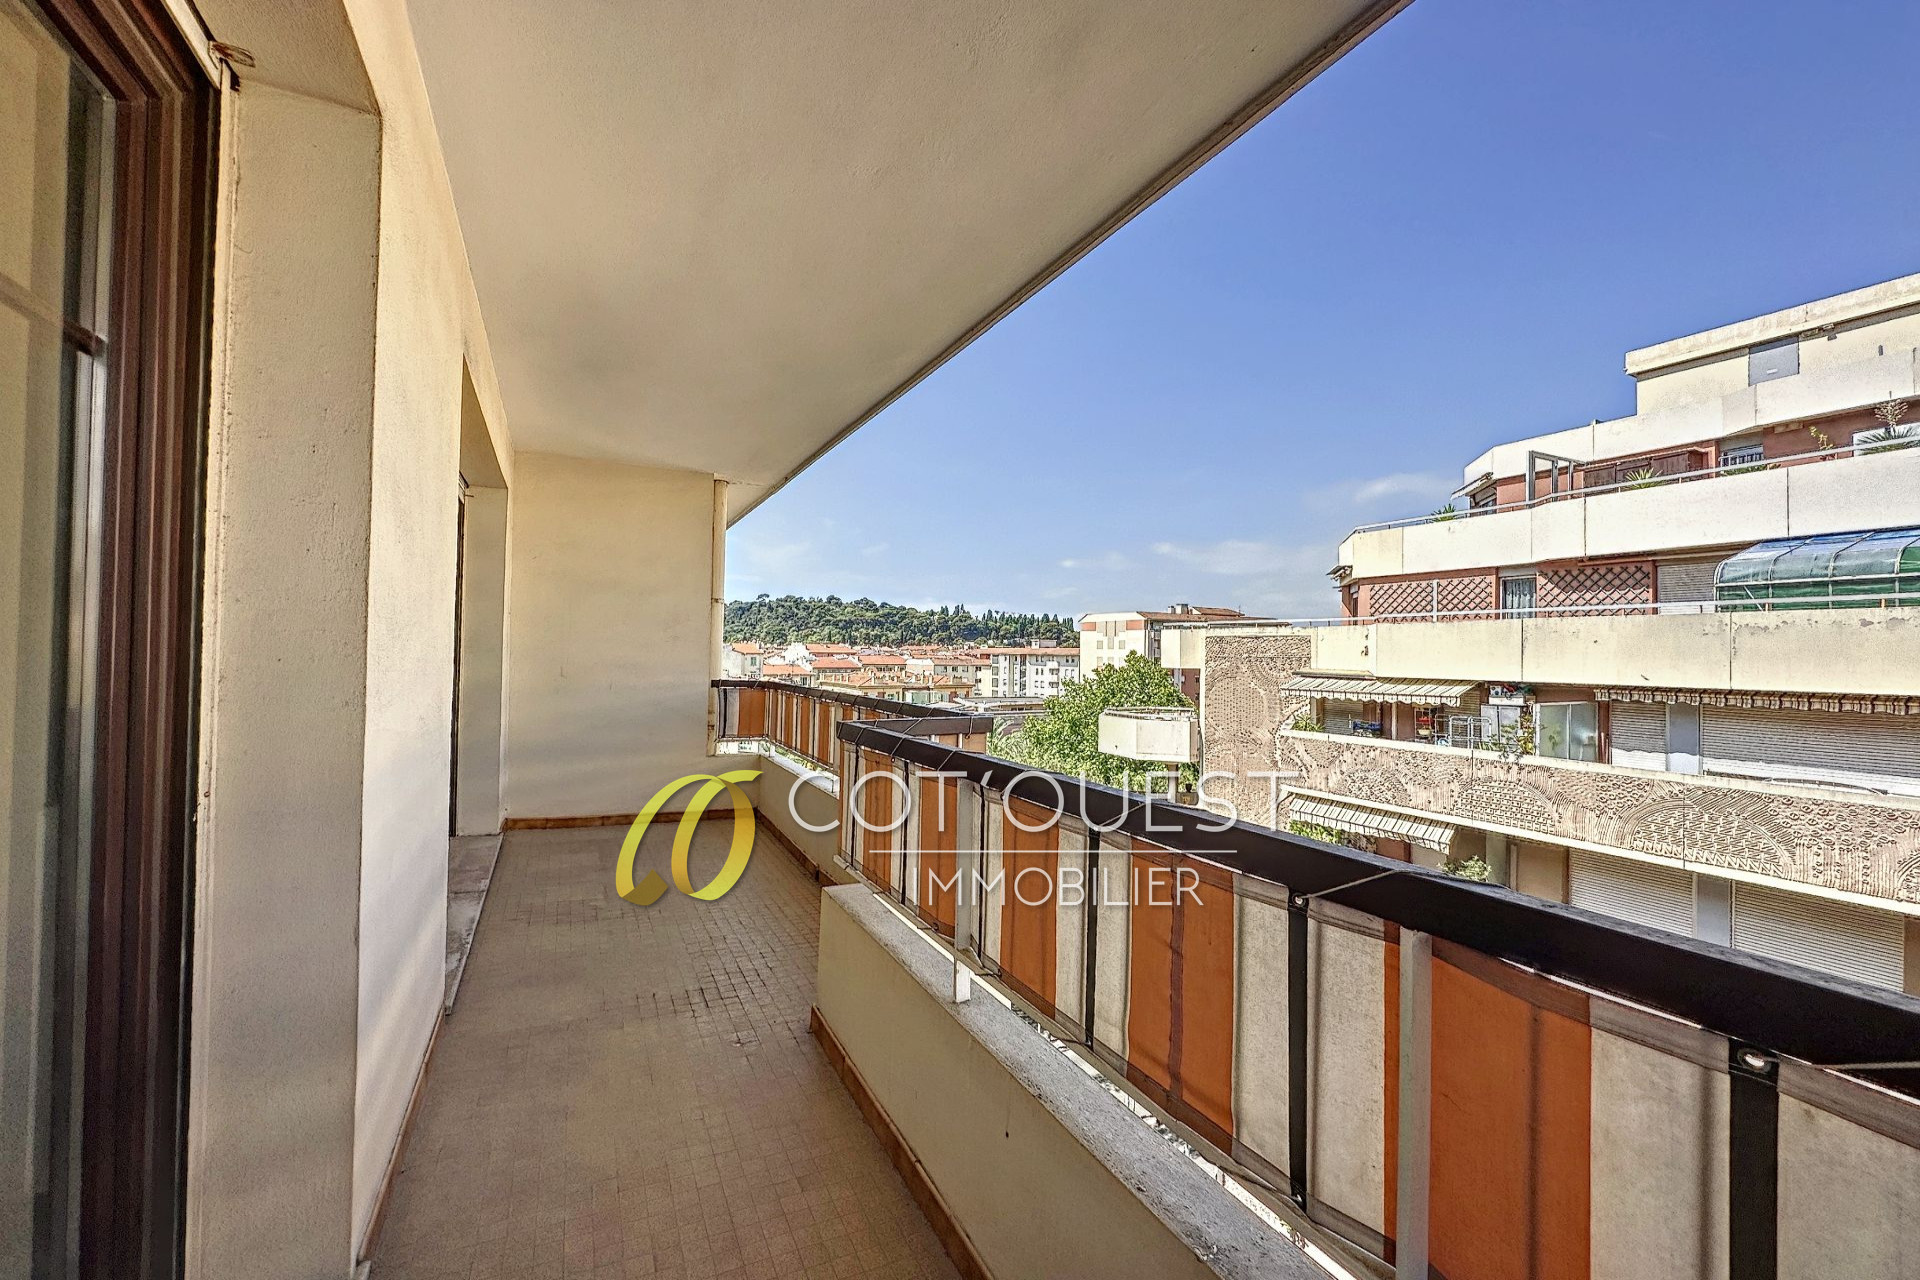 Vente Appartement 70m² à Nice (06300) - Cot'Ouest Immobilier